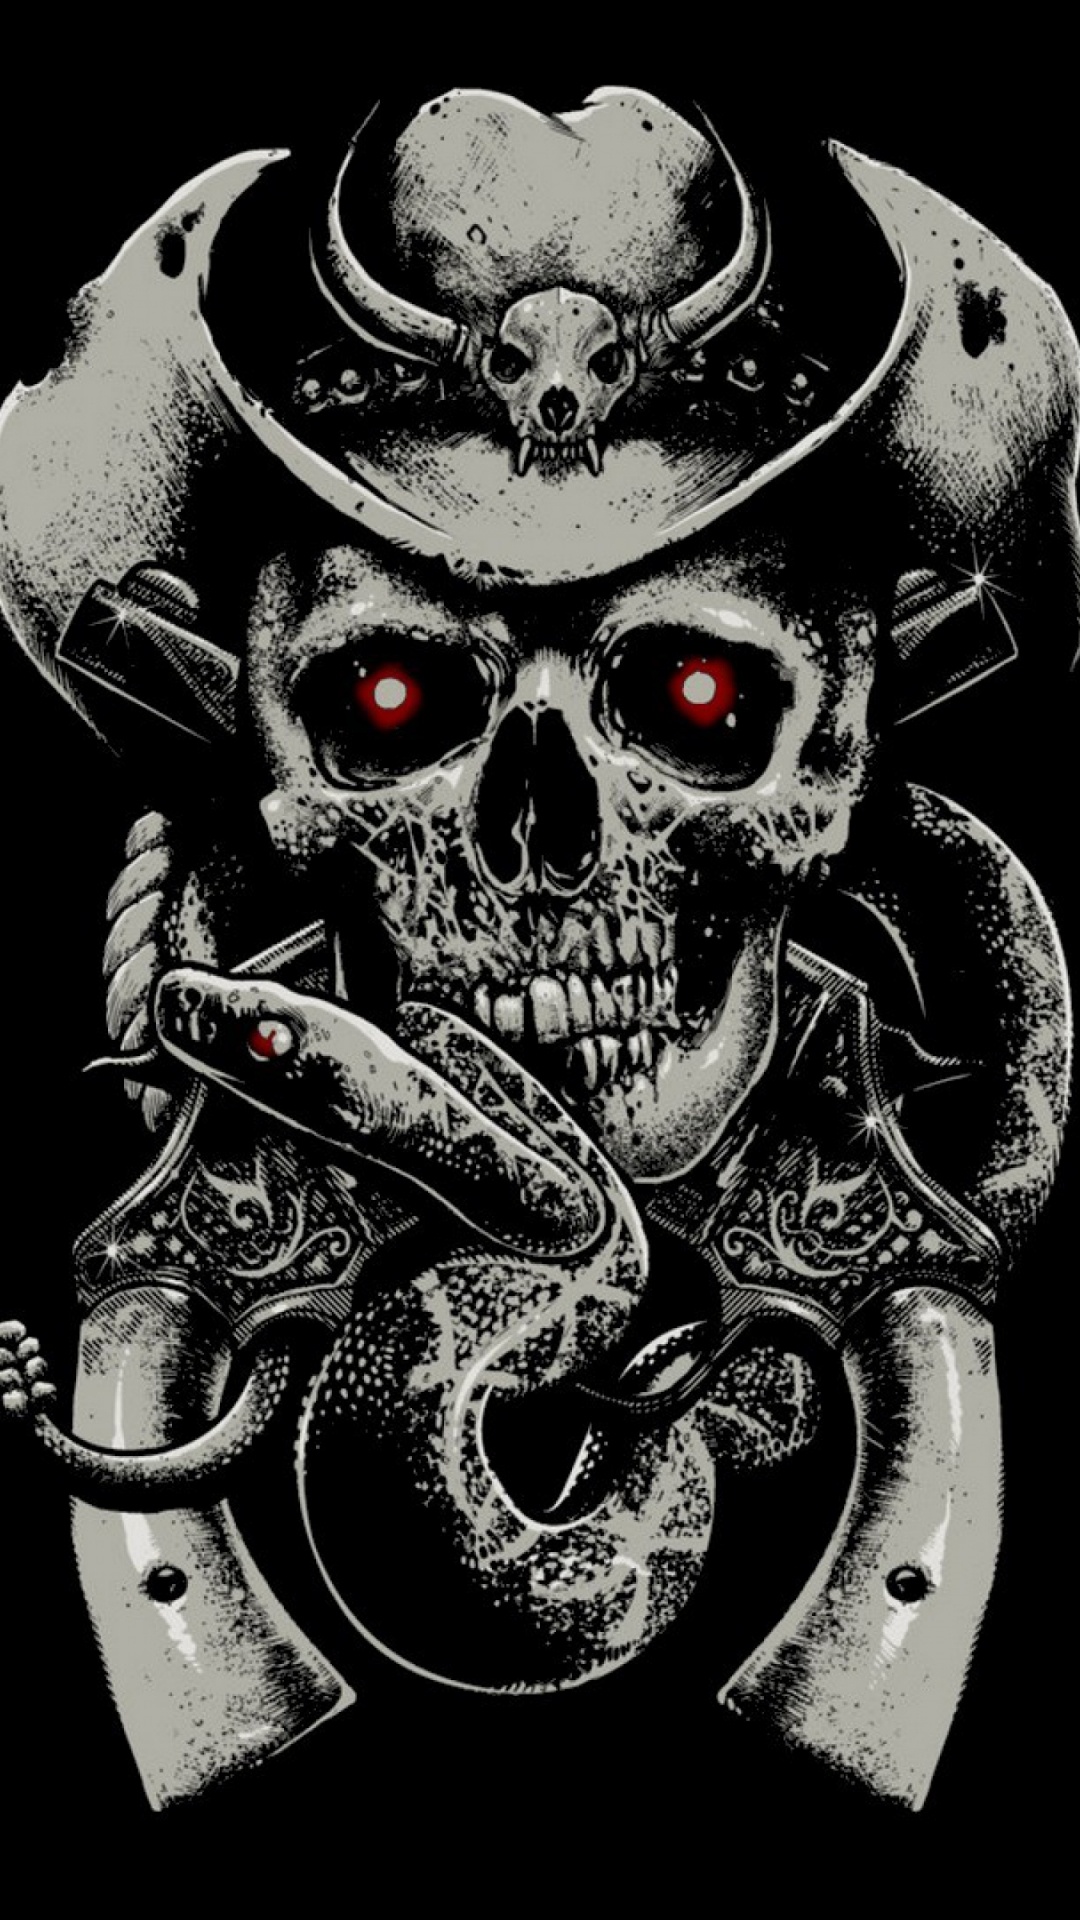 Skull, Illustration, Bone, Black and White. Wallpaper in 1080x1920 Resolution